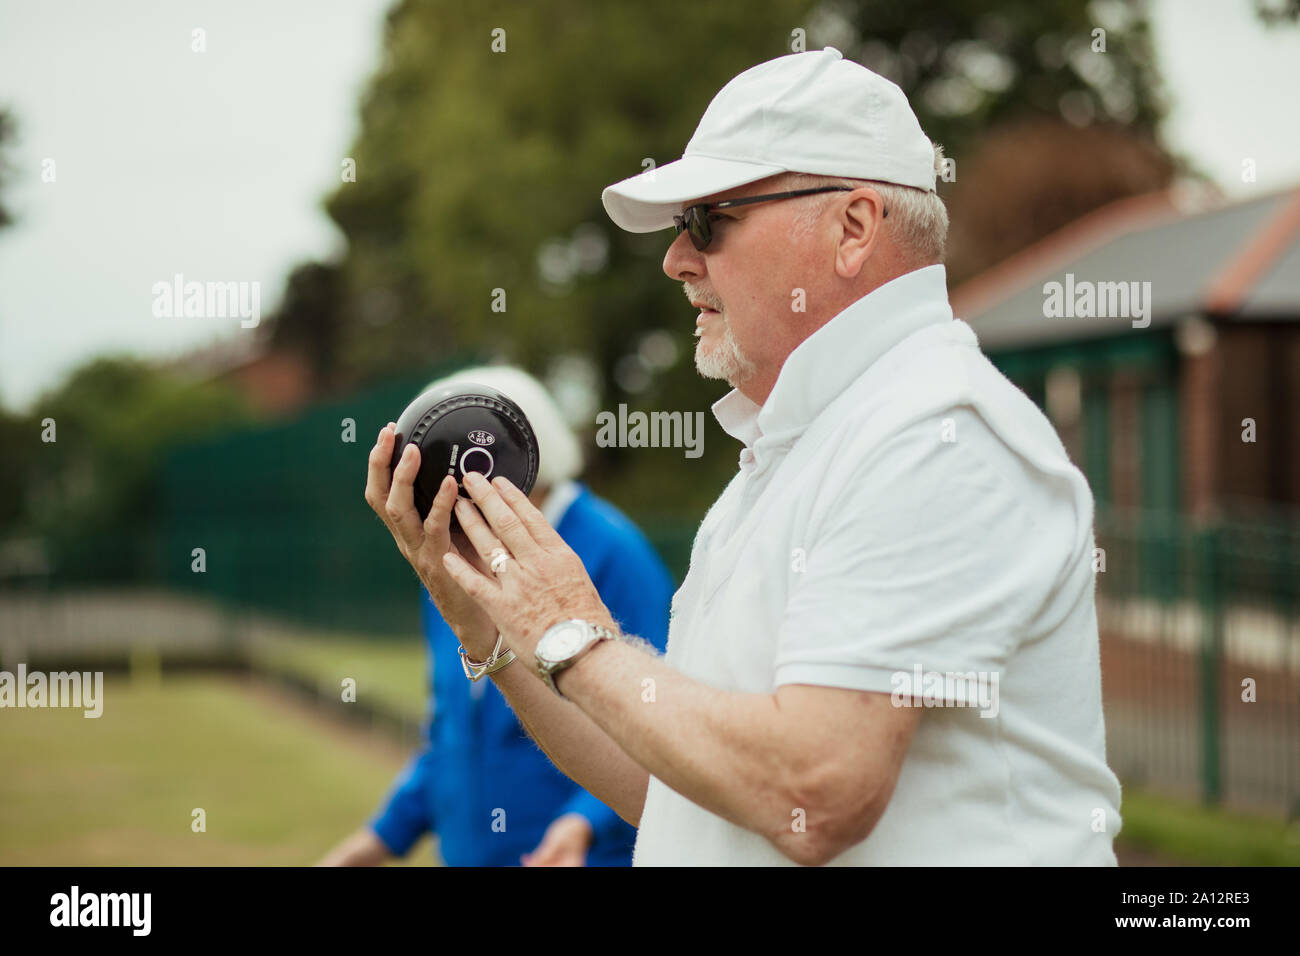 Eine Nahaufnahme von einem fokussierten älterer Mann hält eine Boccia, bereit, seinen Schoß zu nehmen. Er trägt eine weiße Kappe und Sonnenbrille. Stockfoto